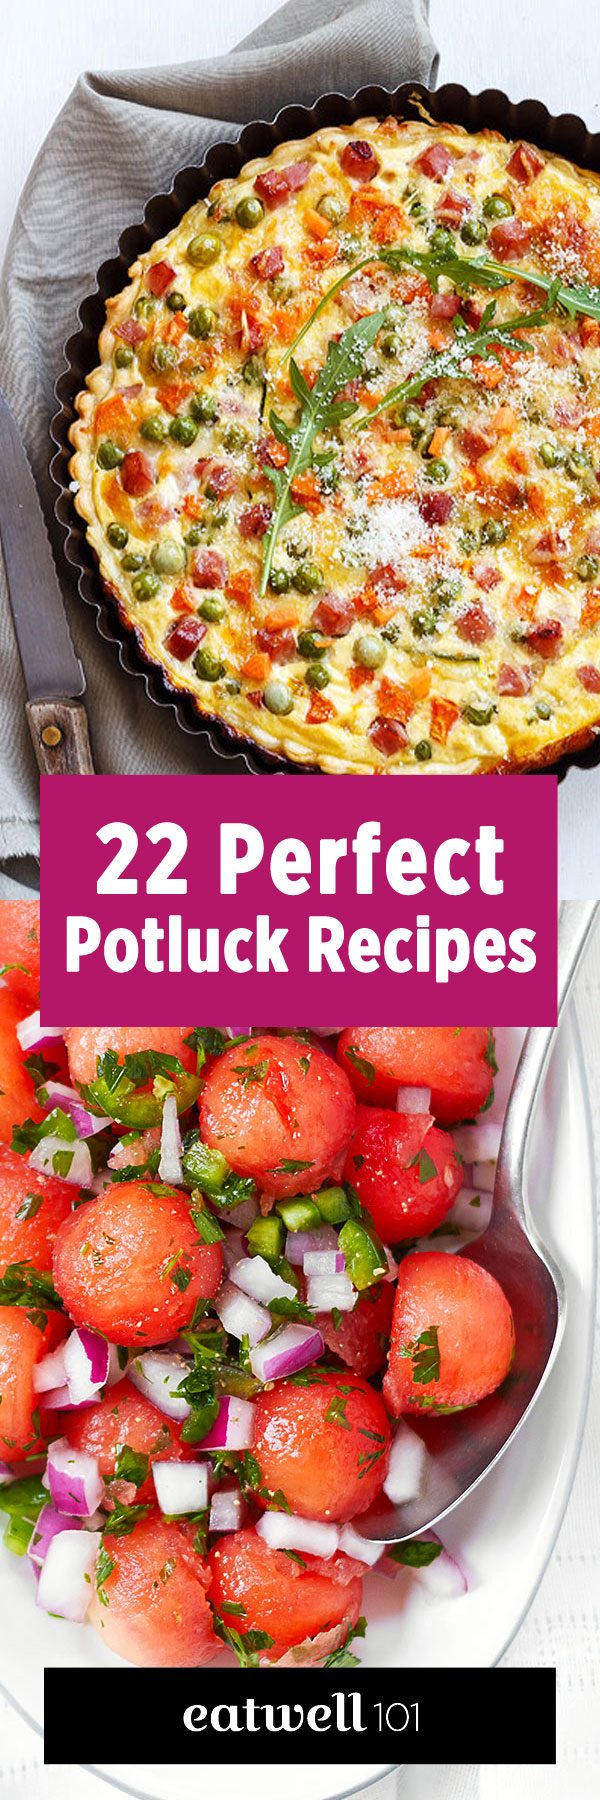 potluck recipes